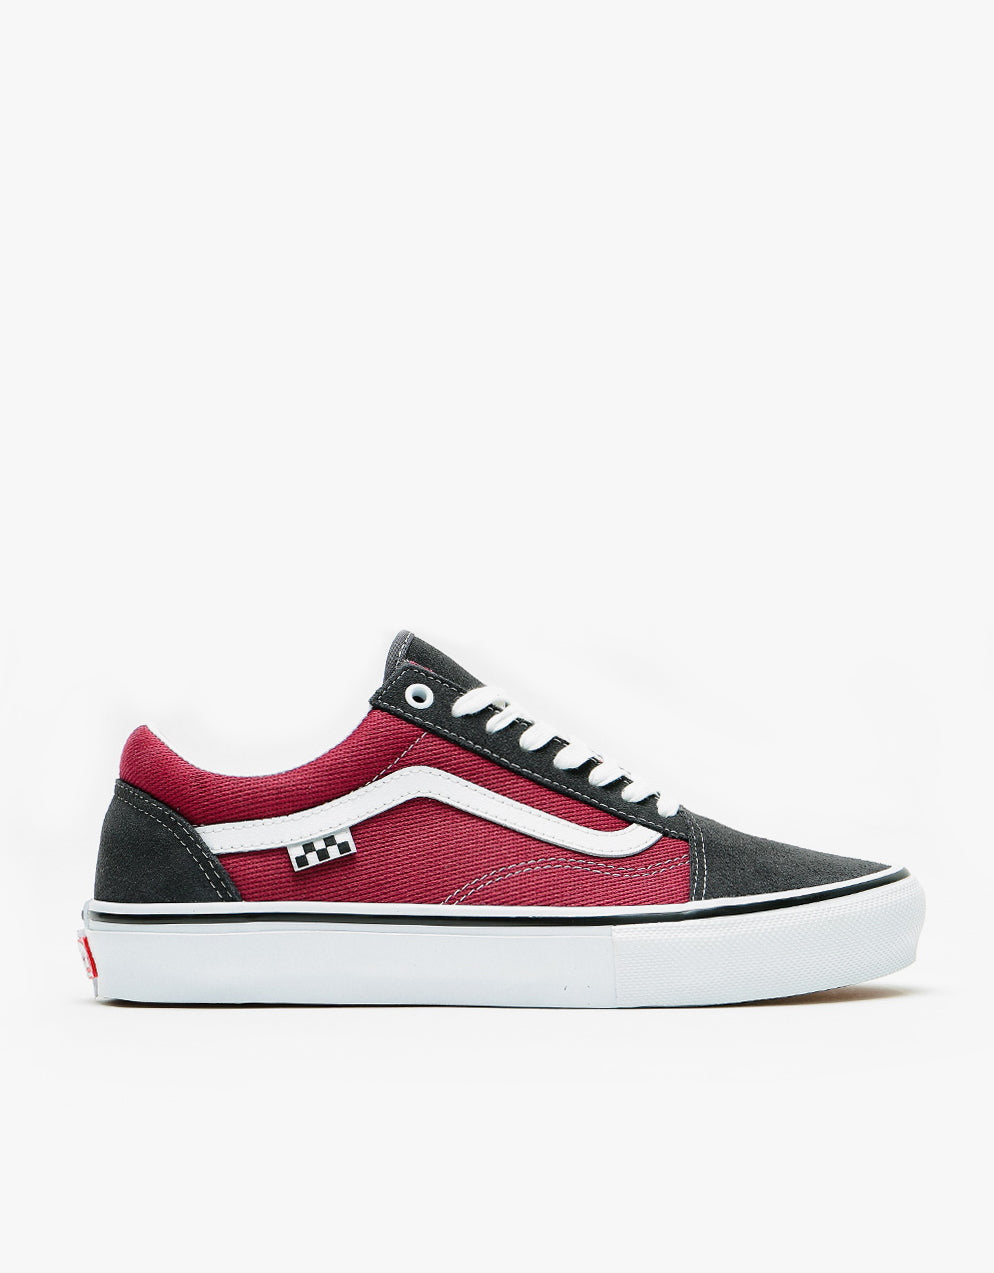 Vans Skate Old Skool Shoes - Asphalt/Pomegranate